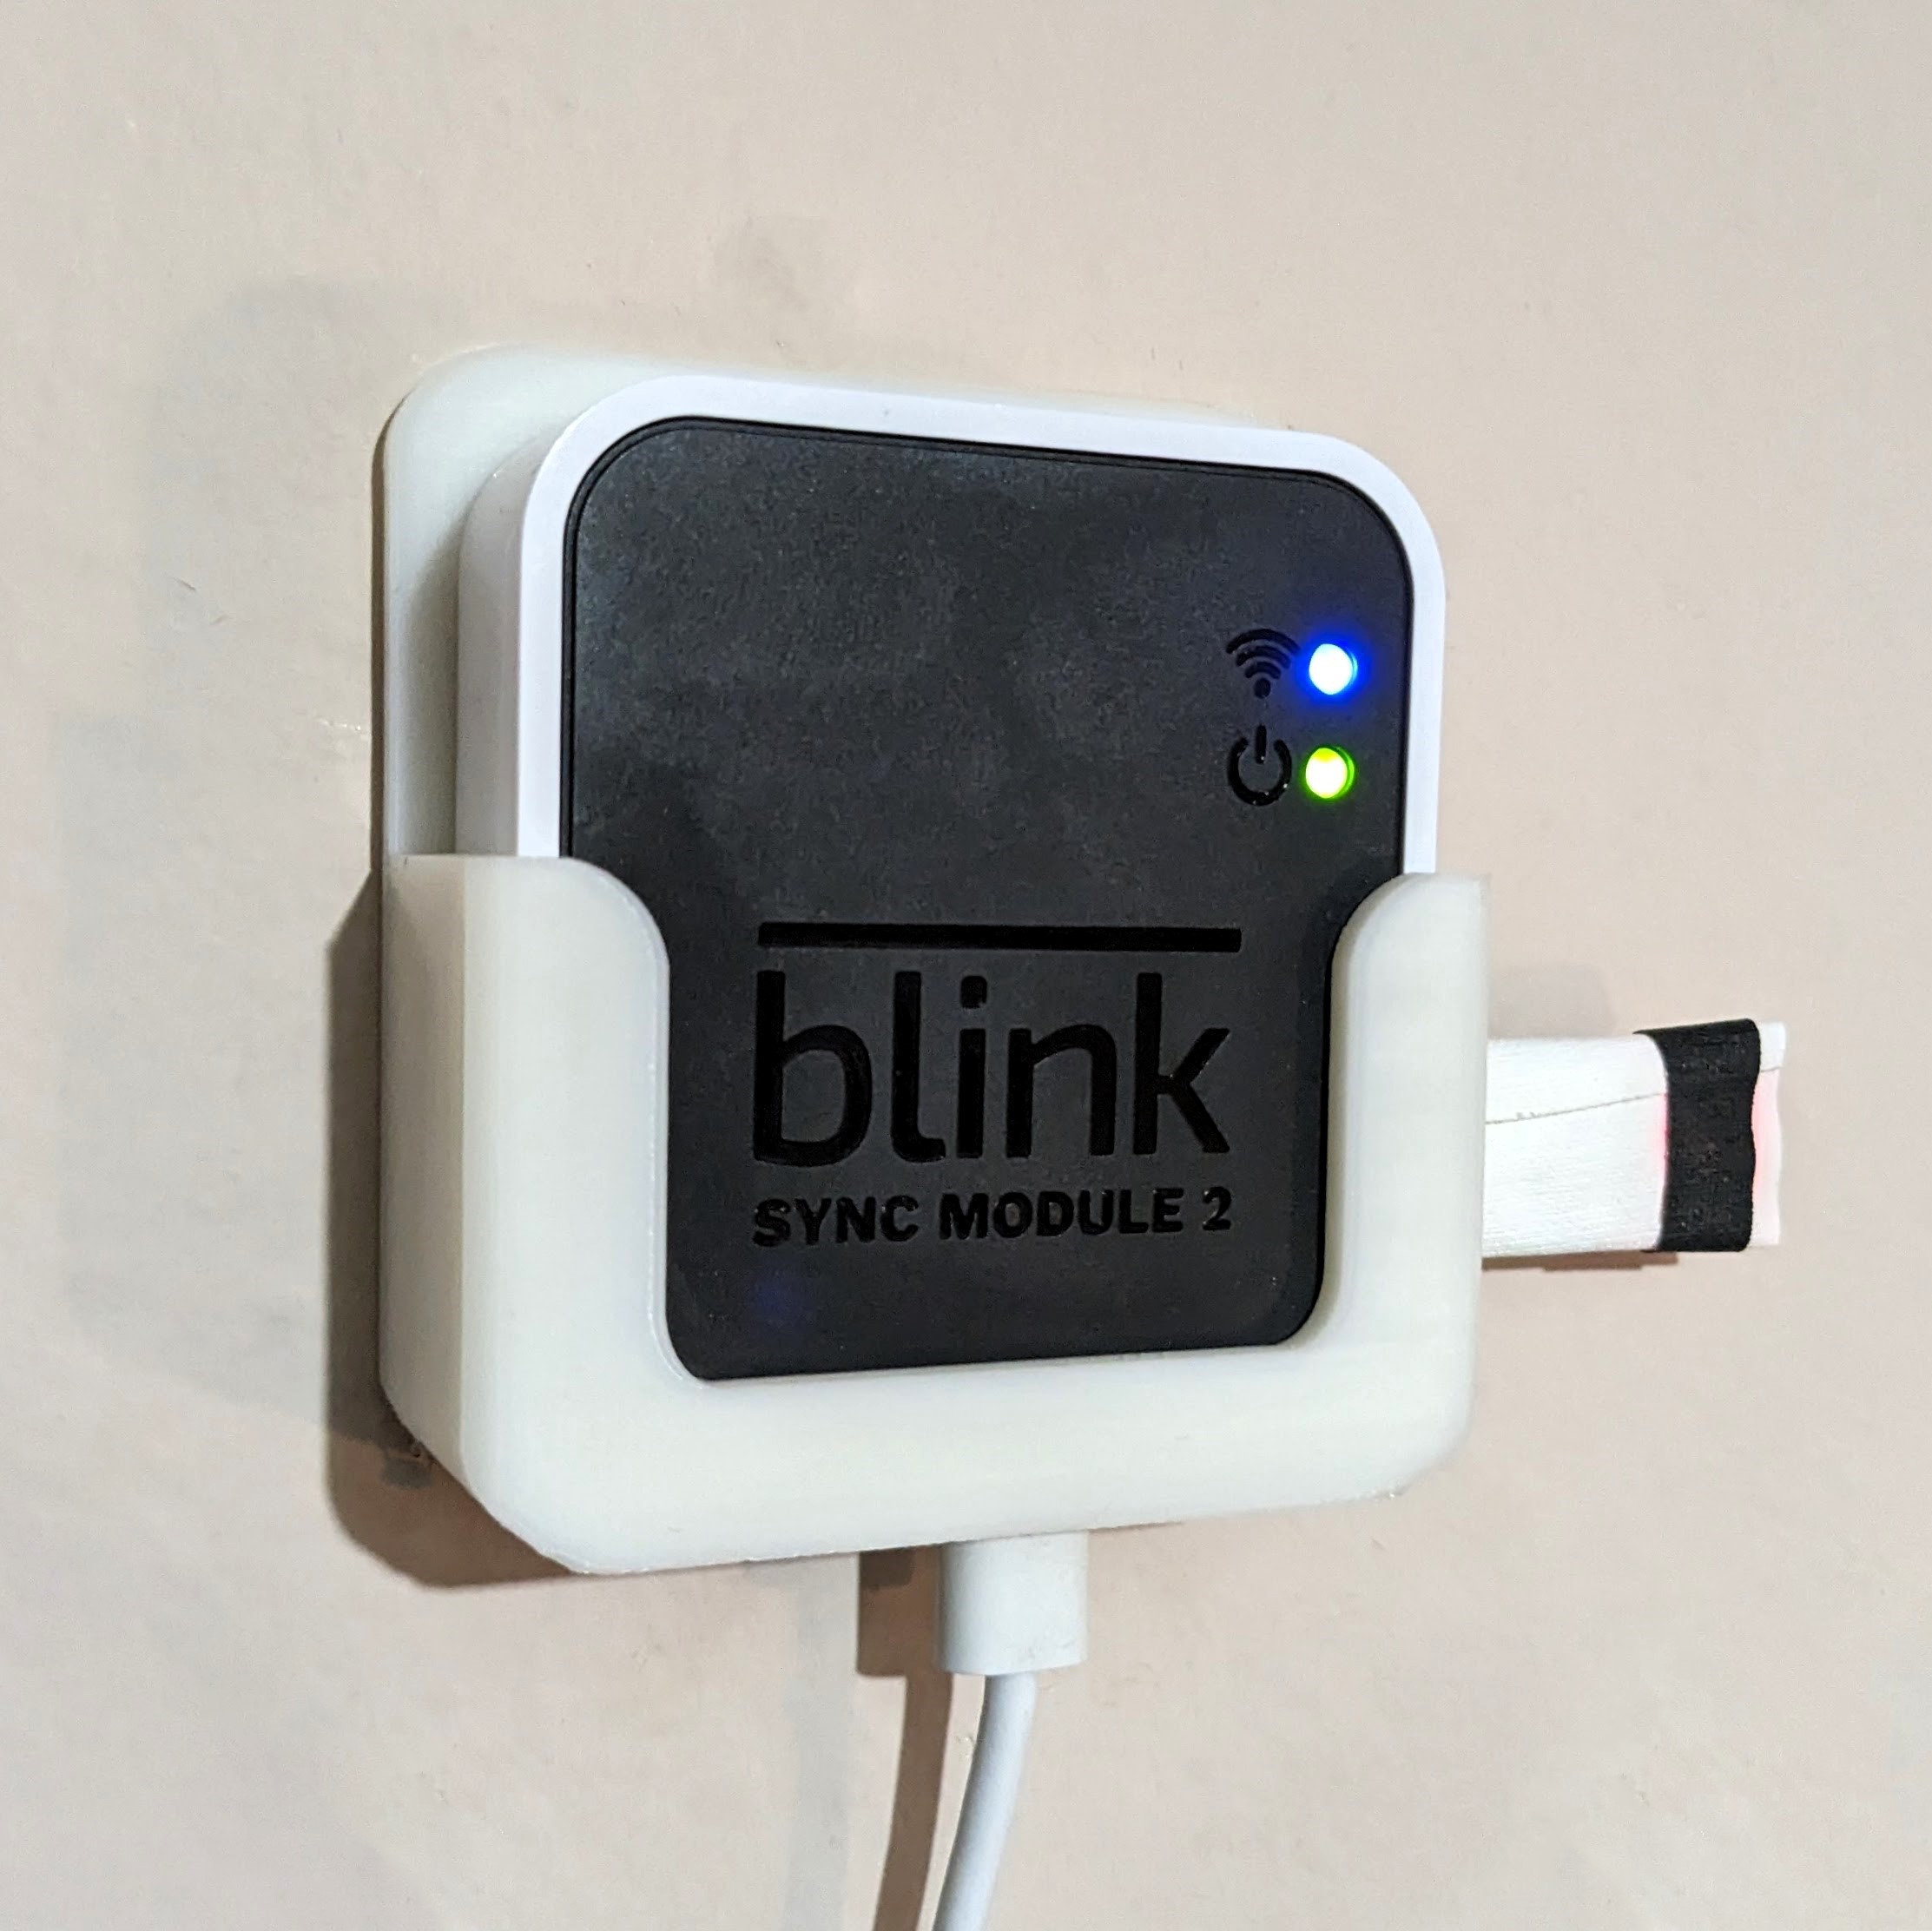 Blink Doorbell Sync Module 2 Mount by metaf0ur